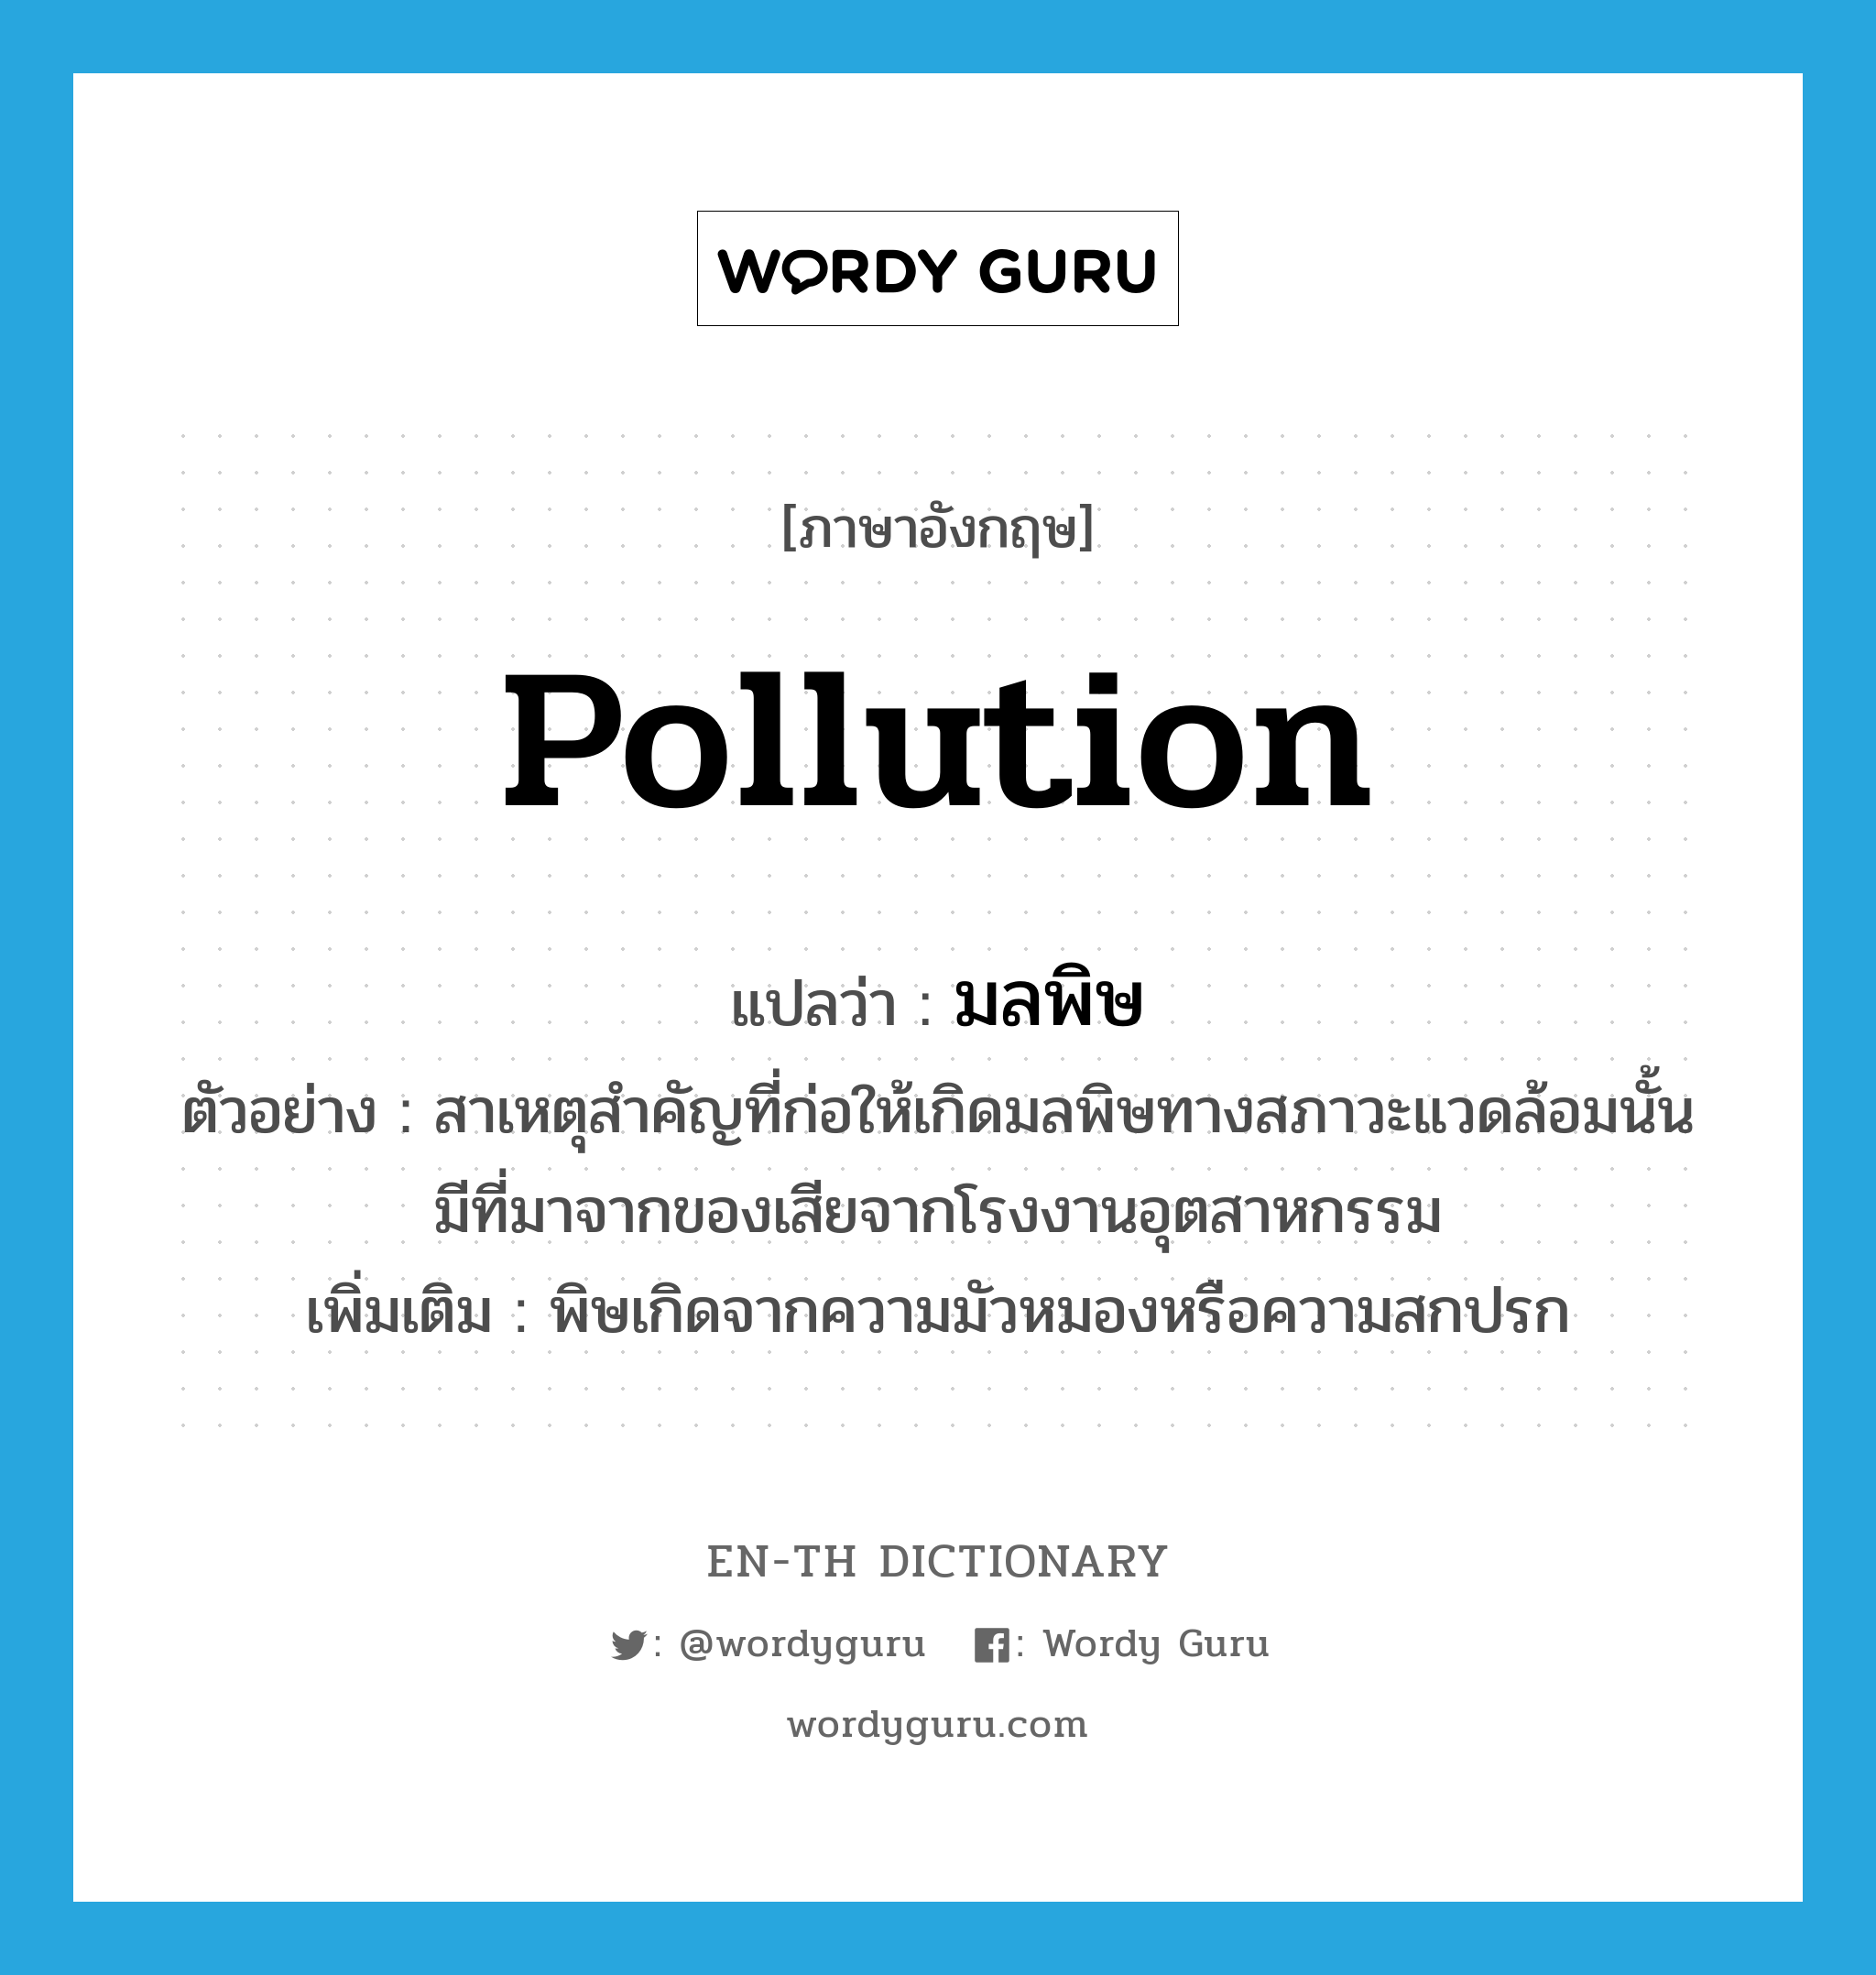 pollution แปลว่า?, คำศัพท์ภาษาอังกฤษ pollution แปลว่า มลพิษ ประเภท N ตัวอย่าง สาเหตุสำคัญที่ก่อให้เกิดมลพิษทางสภาวะแวดล้อมนั้น มีที่มาจากของเสียจากโรงงานอุตสาหกรรม เพิ่มเติม พิษเกิดจากความมัวหมองหรือความสกปรก หมวด N